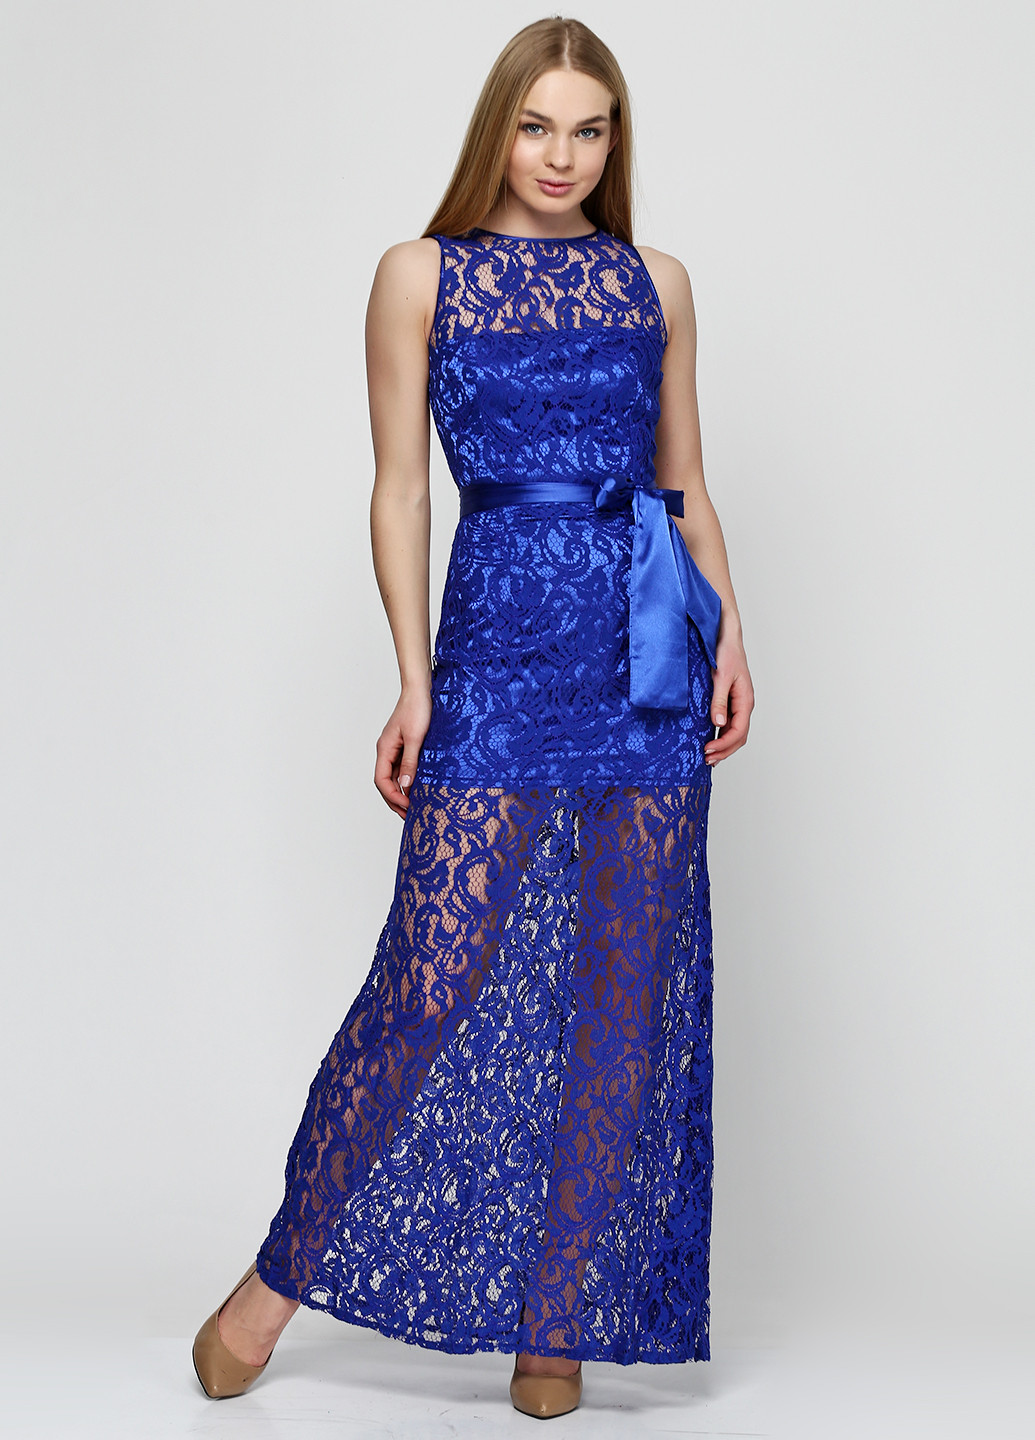 Світло-синя вечірня платье Anastasia з абстрактним візерунком